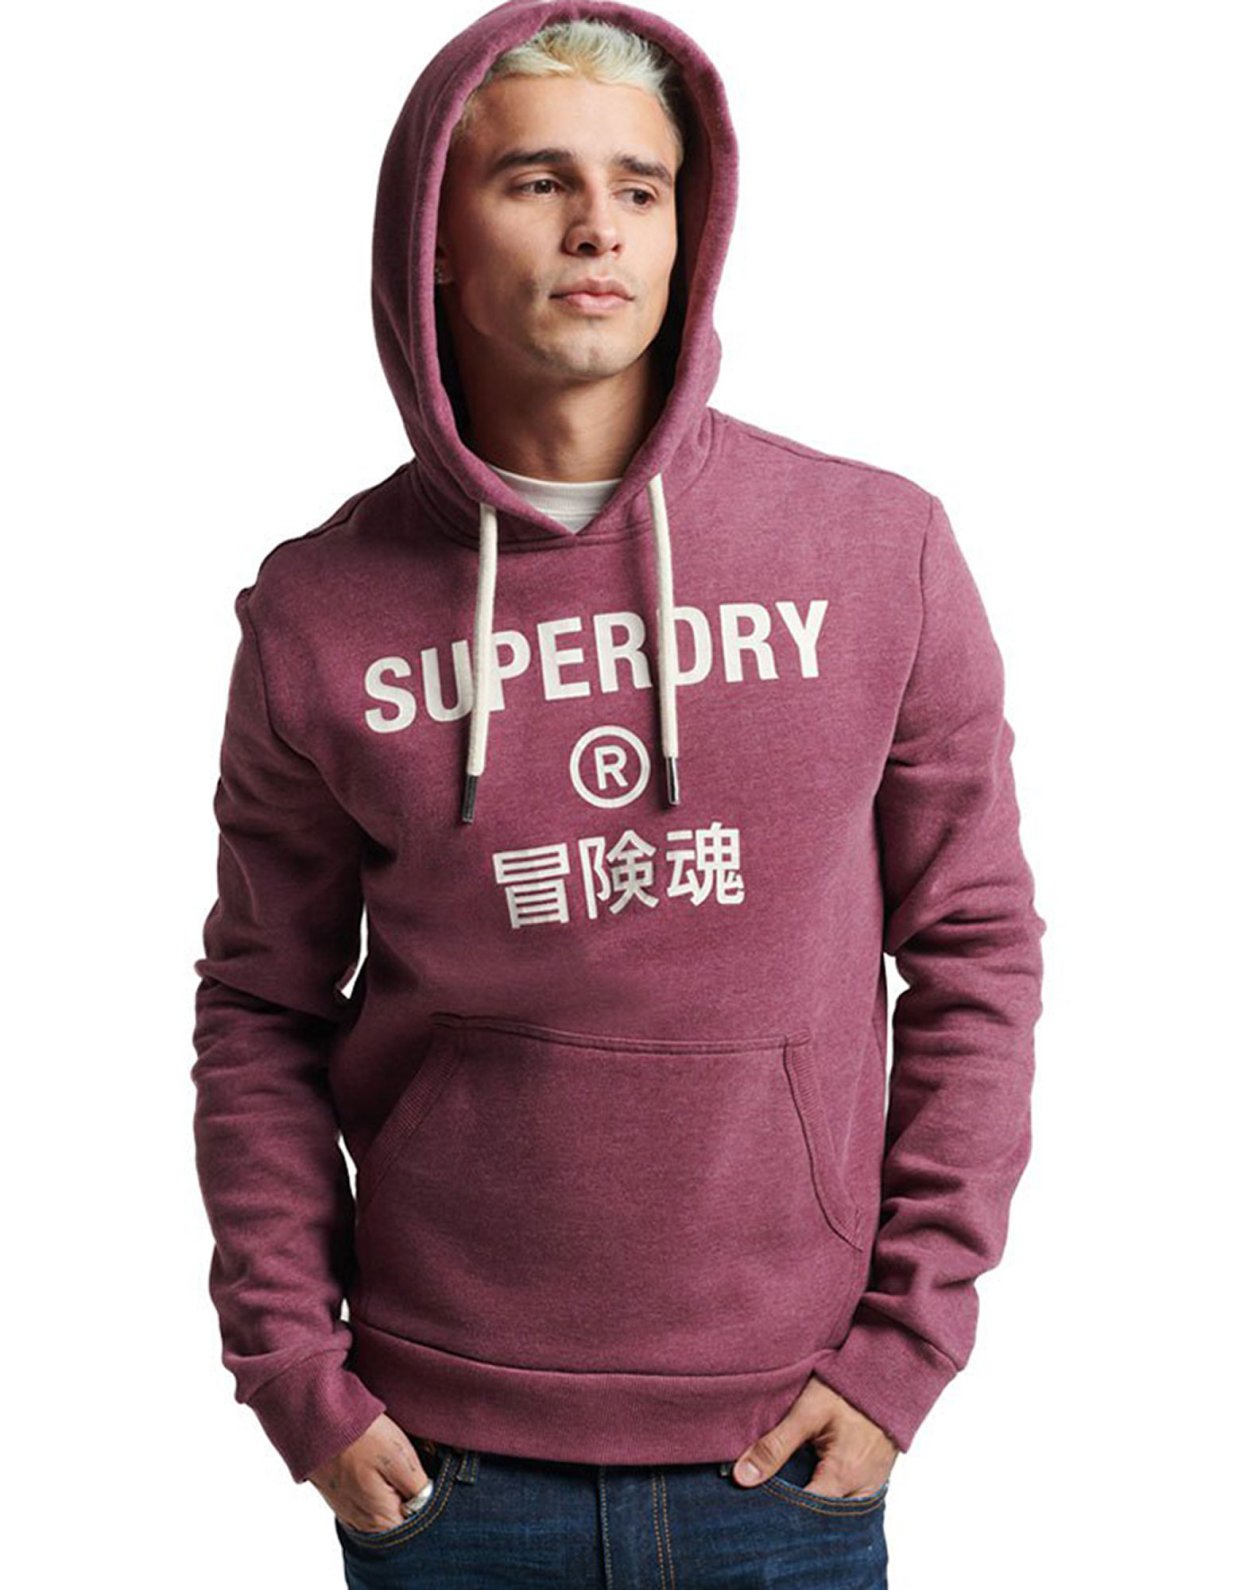 Superdry Vintage corp logo marl hoodie burgundy marl